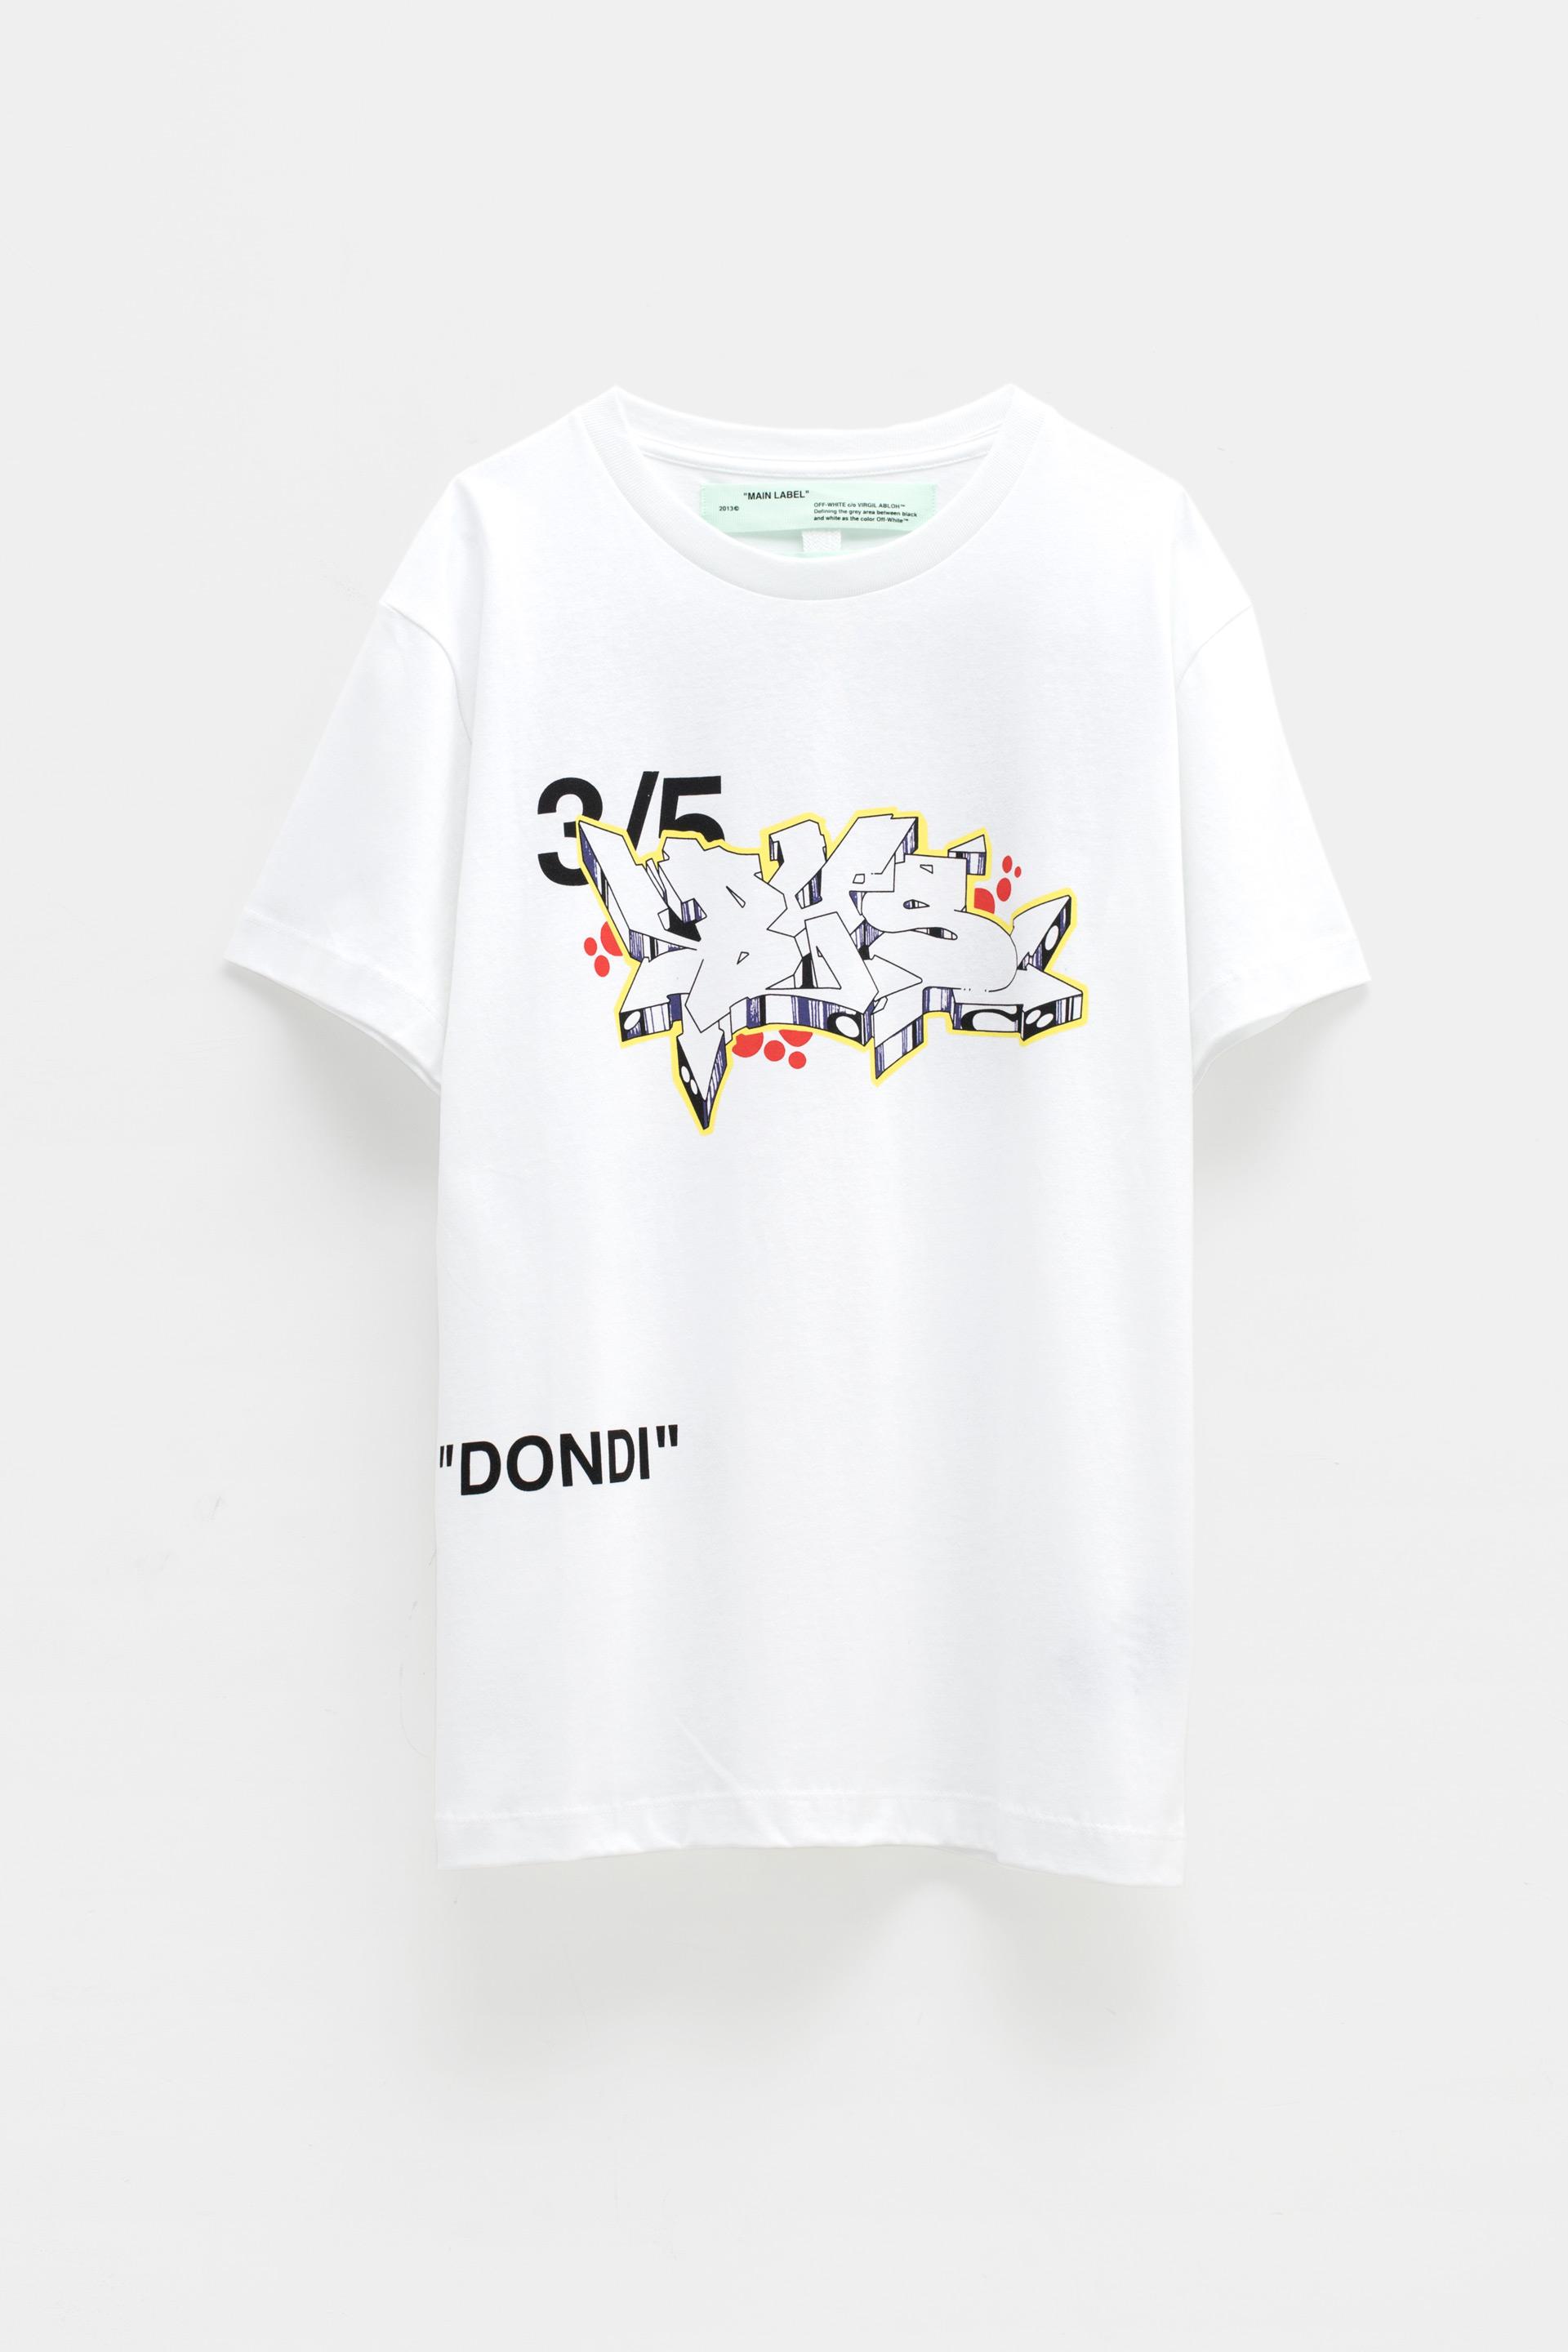 Off-White c/o Virgil Abloh Dondi Men's T-shirt - Lyst